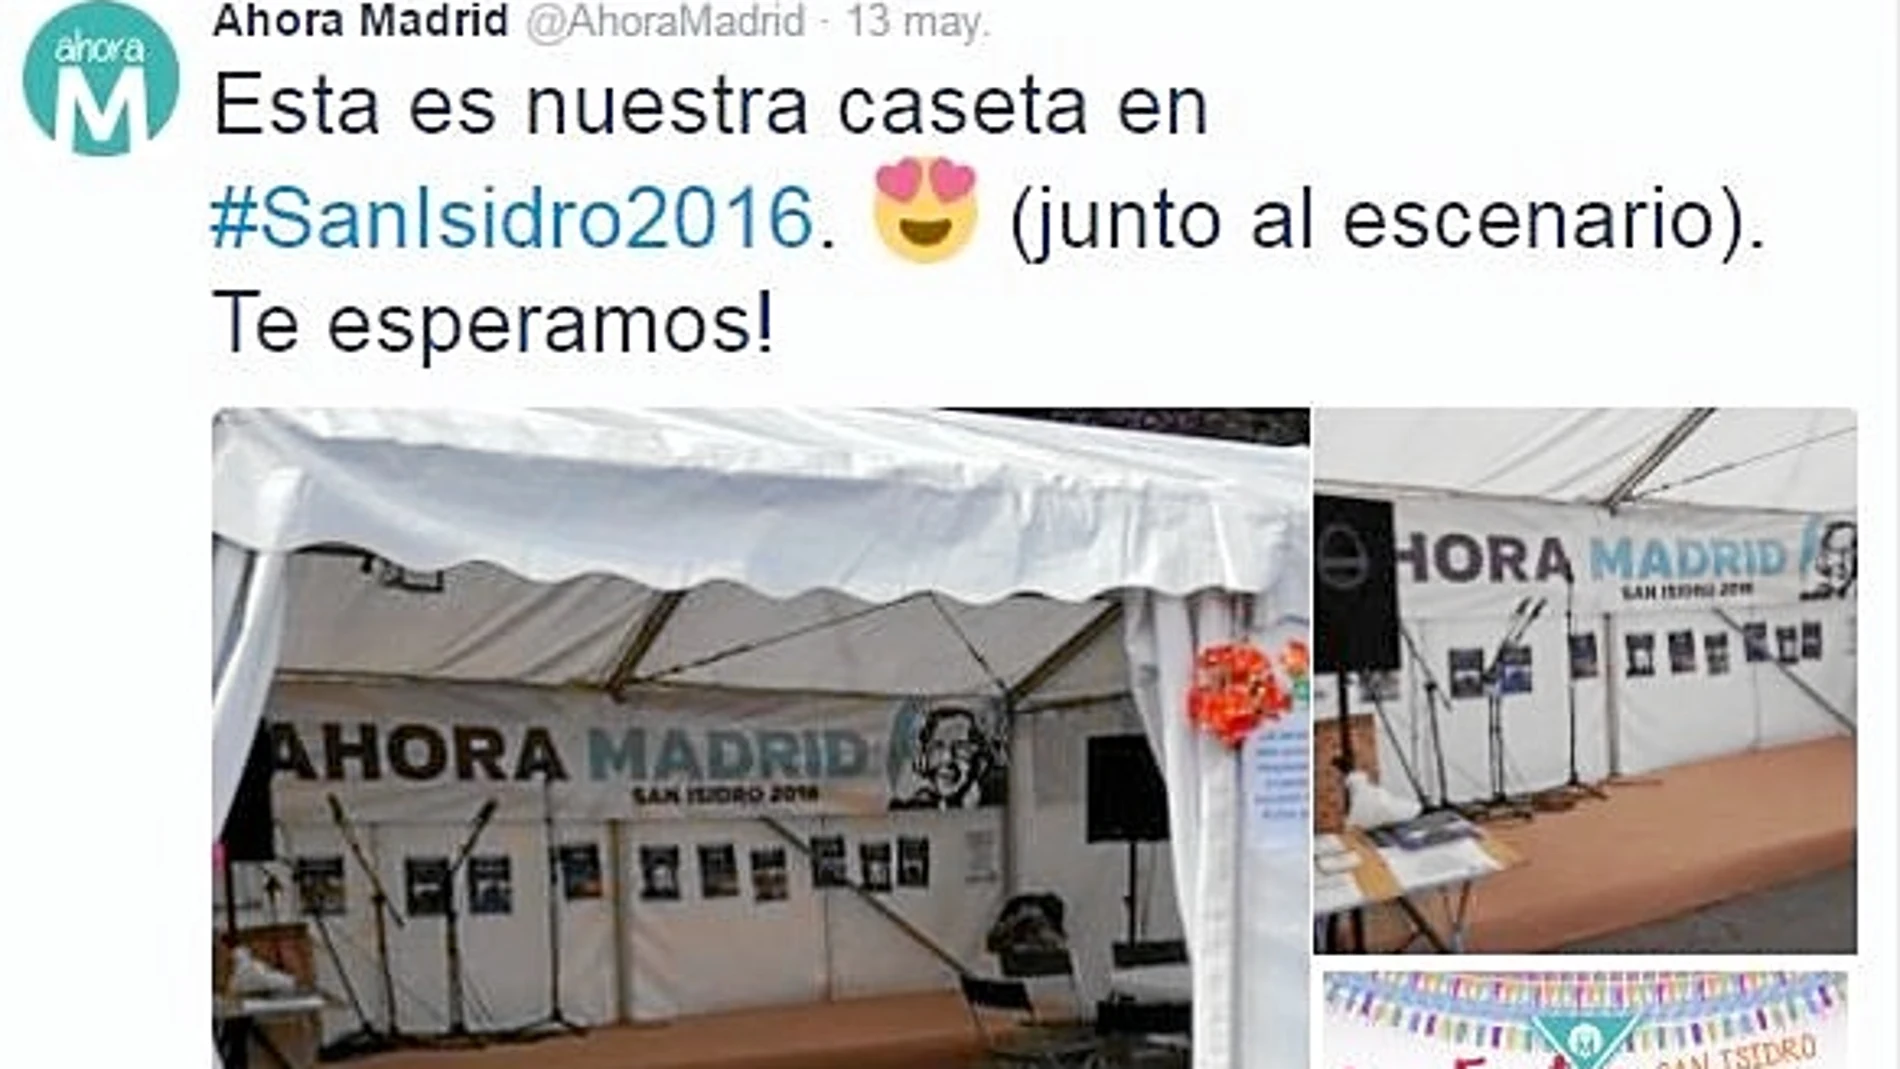 Ahora Madrid presumió en su cuenta de Twitter de que su caseta estaba en primera línea de los conciertos de la pradera